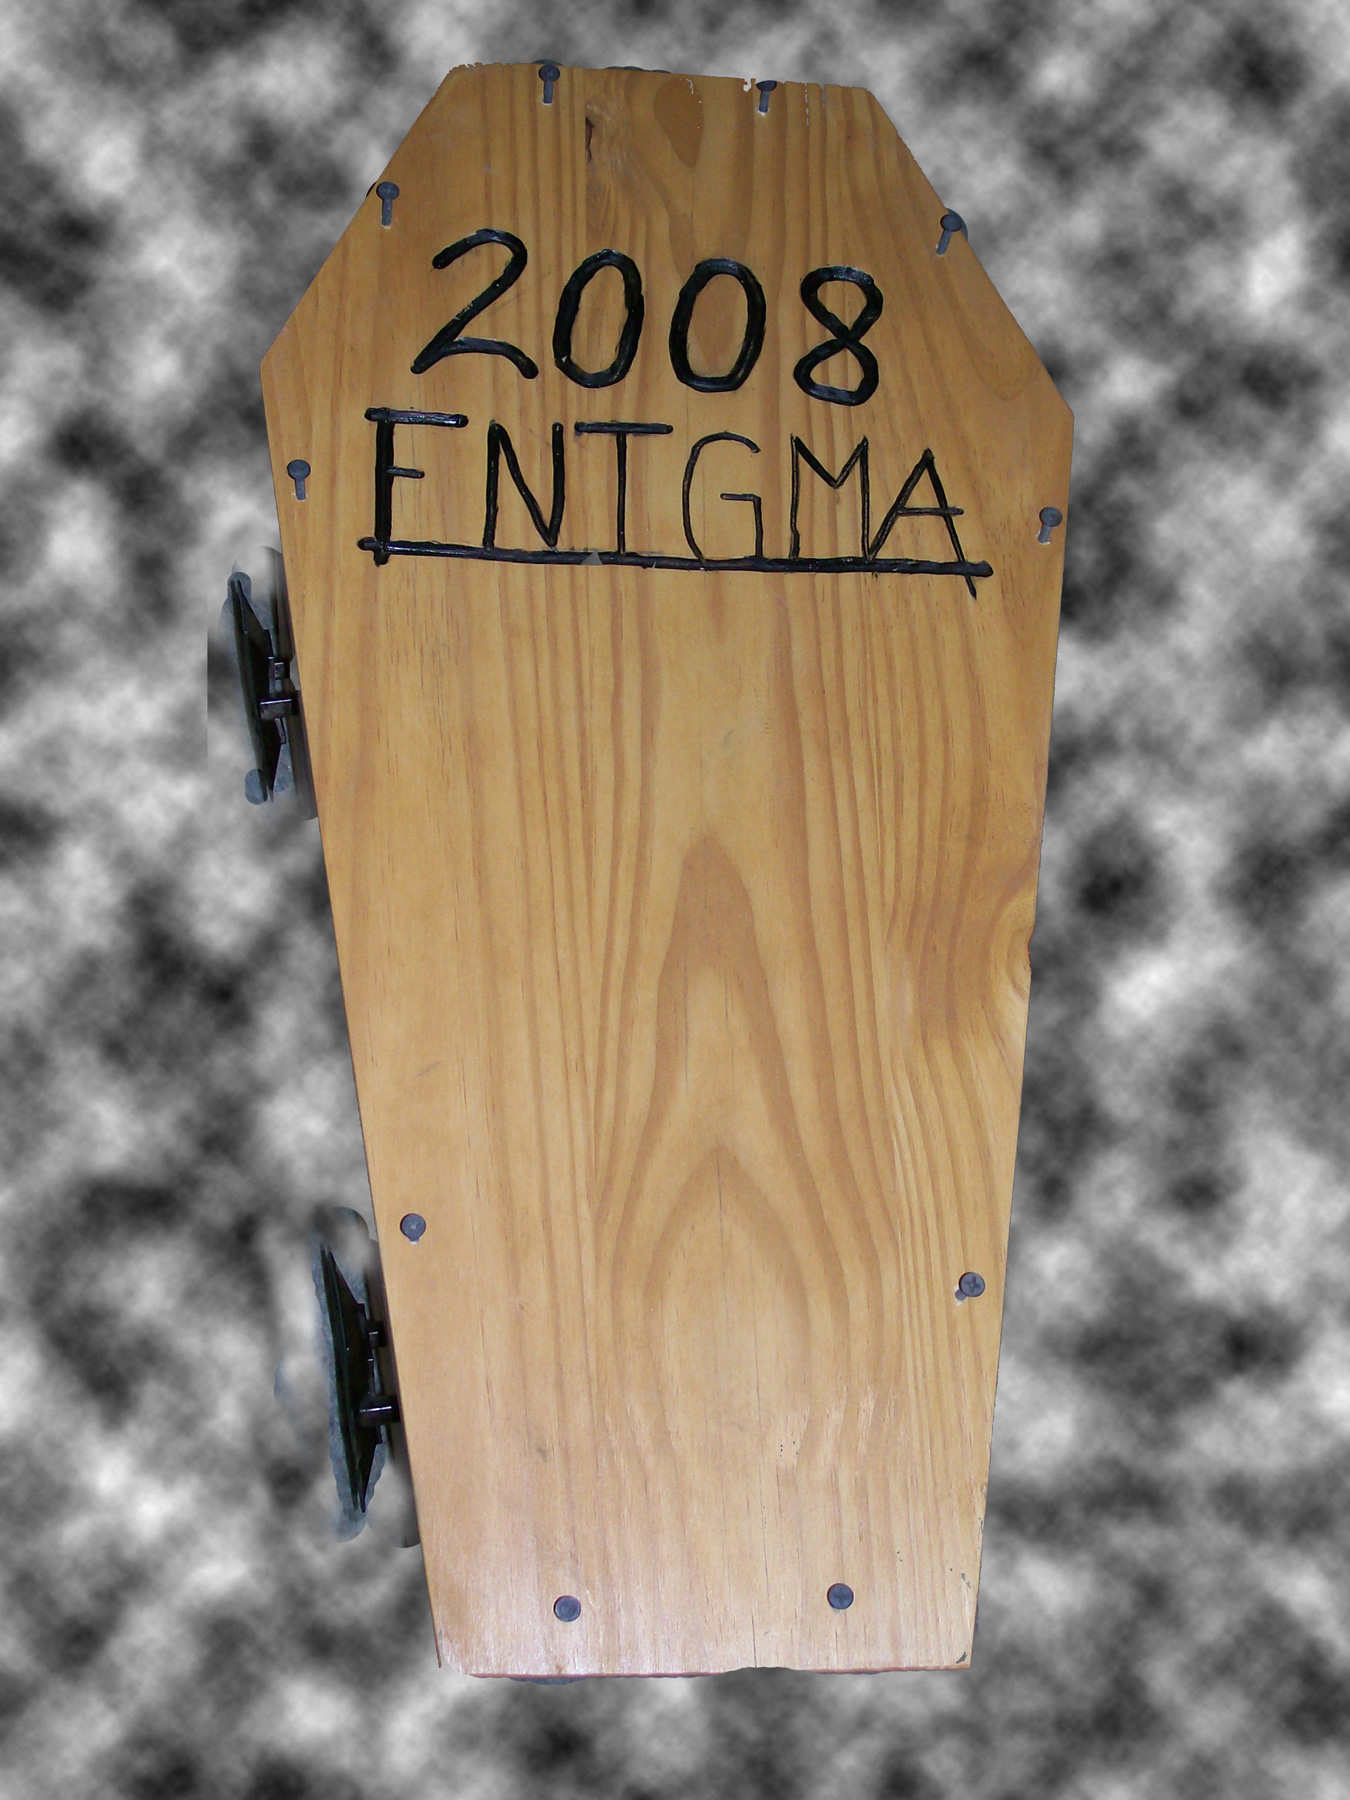 Enigma 2008 coffin